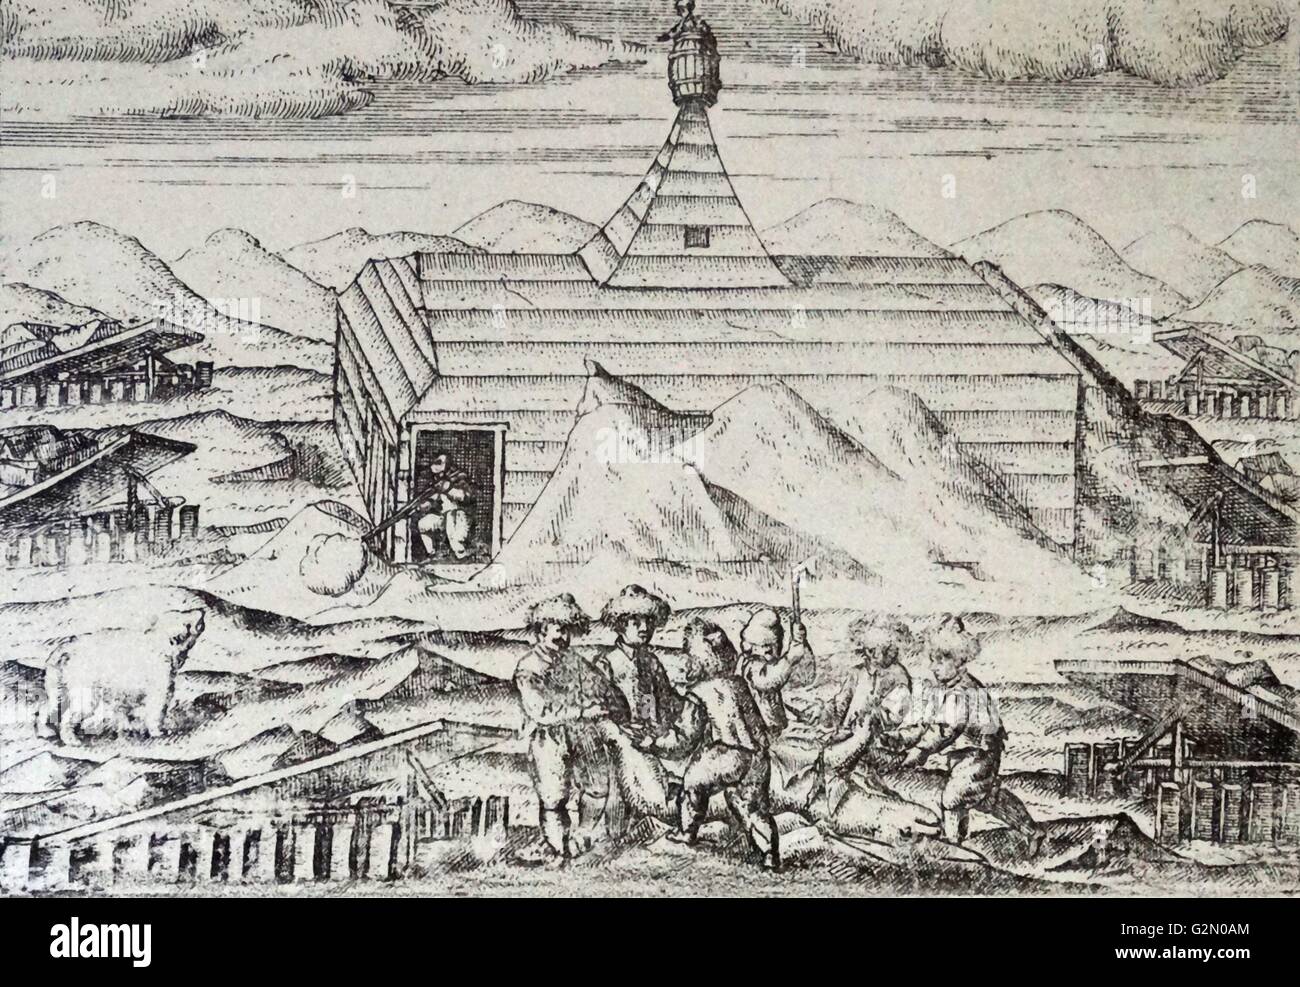 Van di barentz viaggi da Gerrit de veer 1598 la capanna. Willem Barentsz (William Barents Barentz o) (c. 1550 - 20 giugno 1597) navigatore olandese, cartografo, e Arctic explorer. Egli è andato in tre spedizioni all'estremo nord nella ricerca di un passaggio a nordest. Durante la sua terza spedizione l equipaggio fu arenati su Nova Zembla per quasi un anno. Barentsz morì sul viaggio di ritorno nel 1597. Nel XIX secolo il Mare di Barents è stato chiamato dopo di lui. Foto Stock